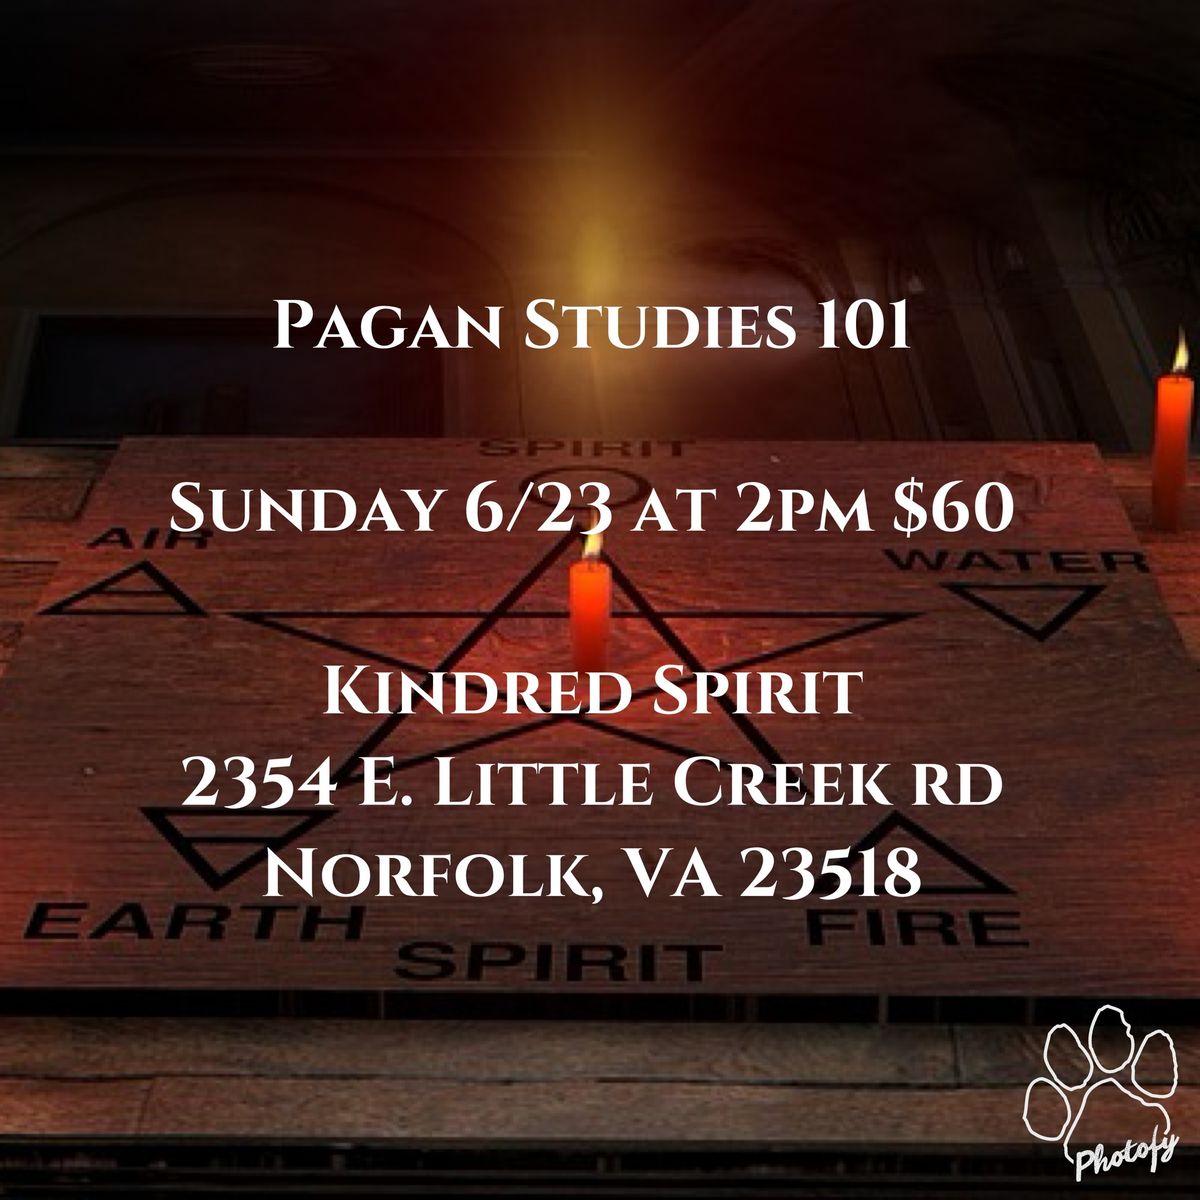 Pagan Studies 101